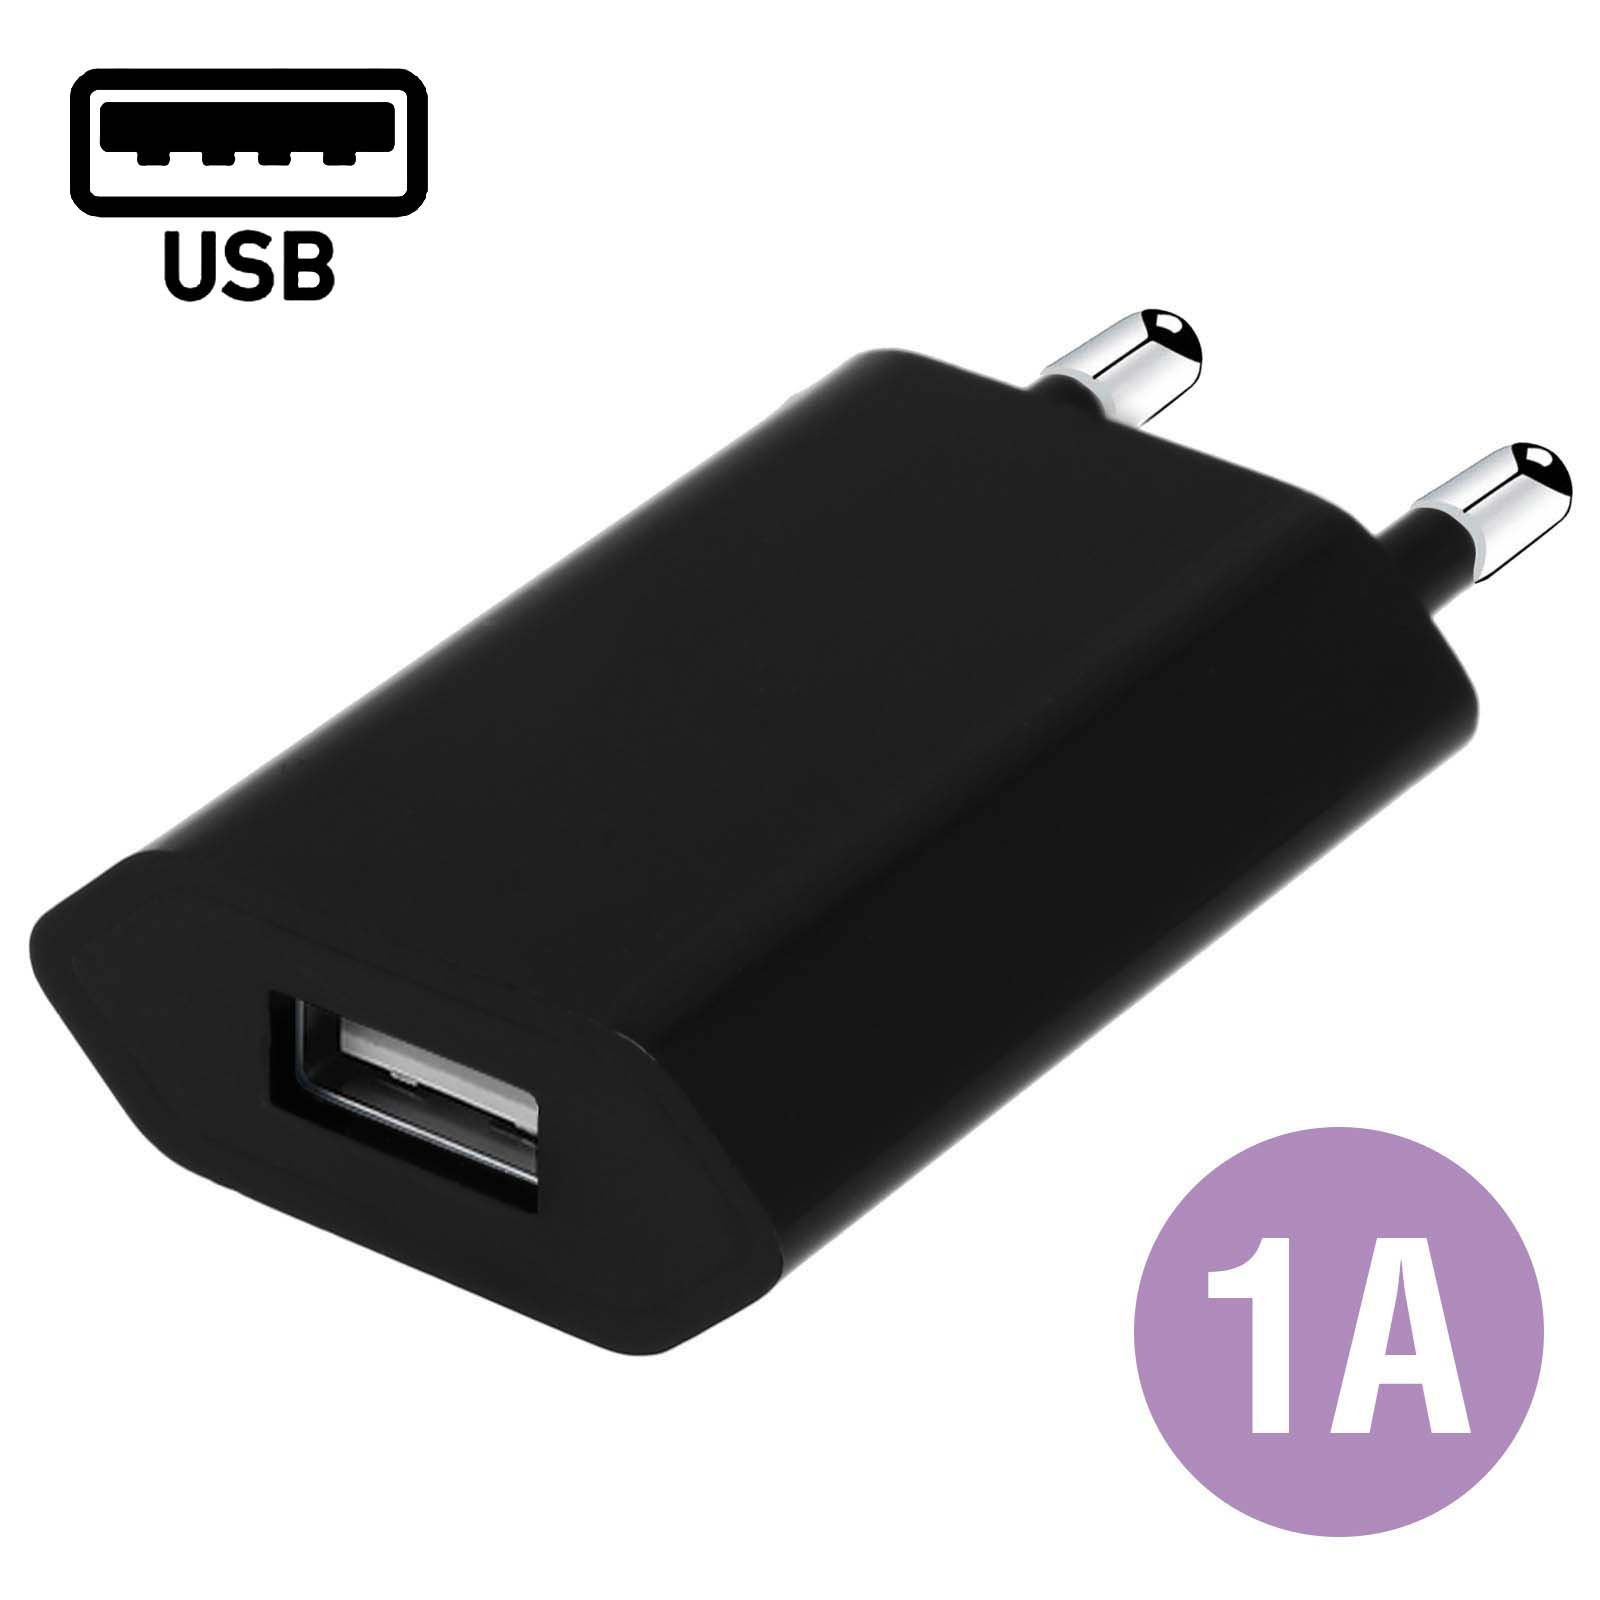 Chargeur pour téléphone mobile GENERIQUE Chargeur Adaptateur USB - Prise  Secteur - Noir